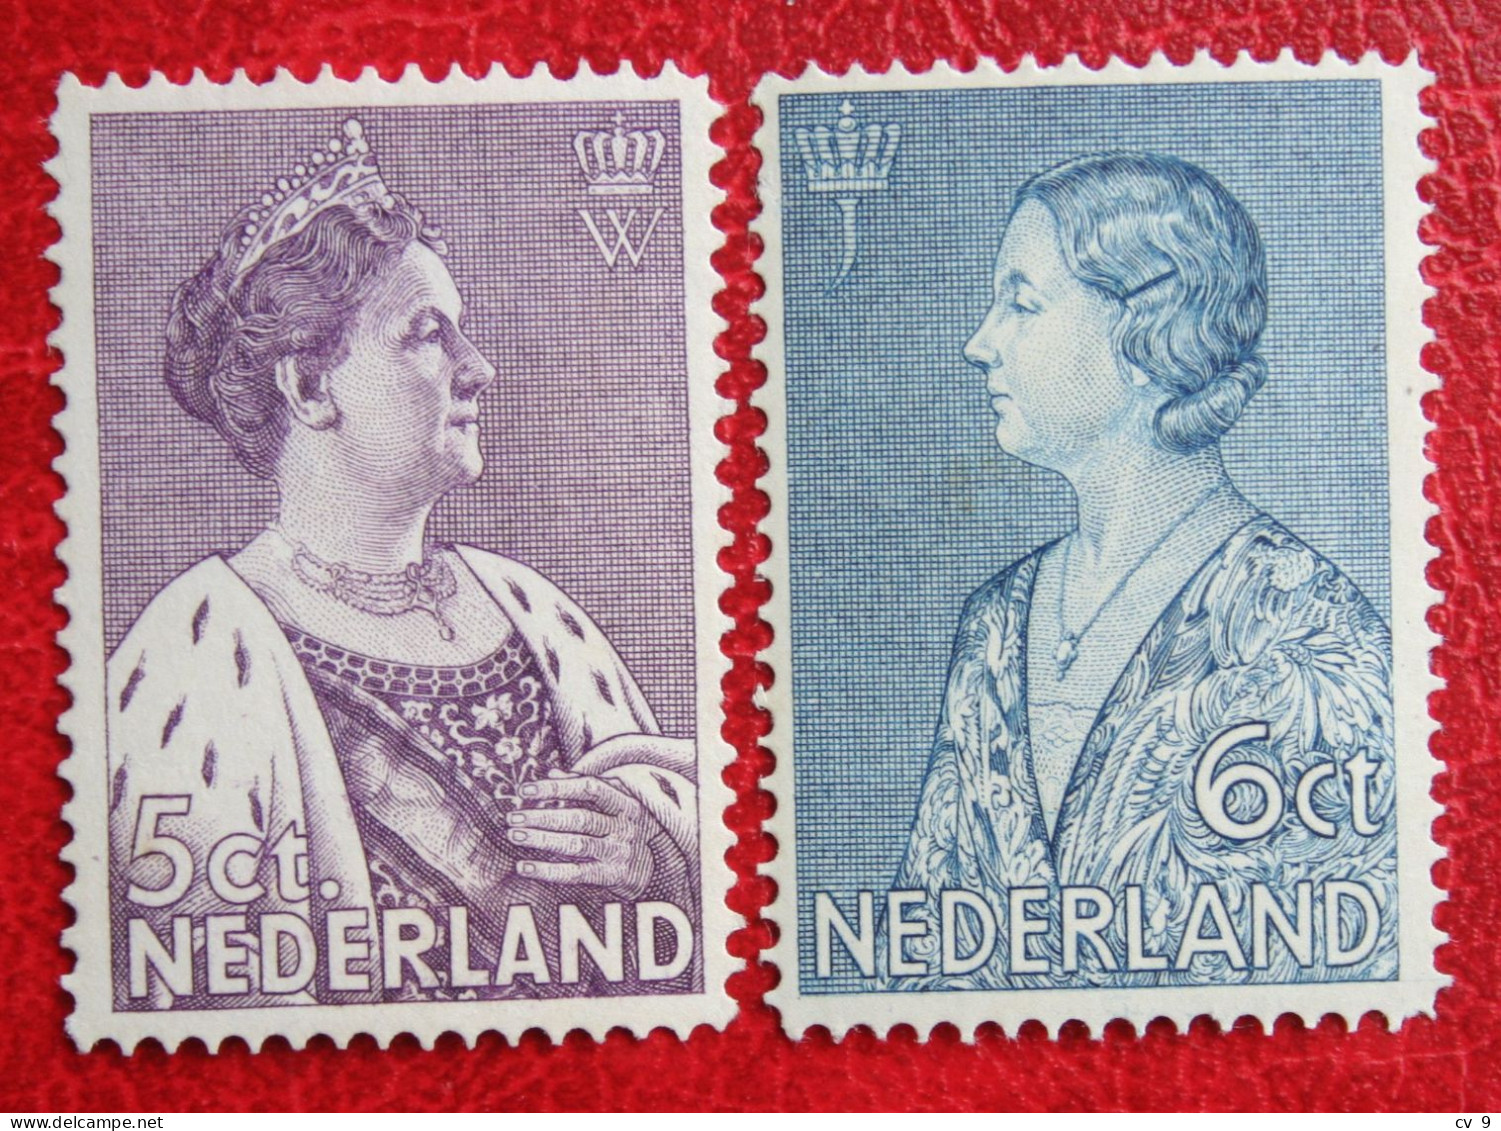 READ Crisis Zegel NVPH 265-266 (Mi 272-273) 1934 POSTFRIS / MNH ** NEDERLAND / NIEDERLANDE - Unused Stamps